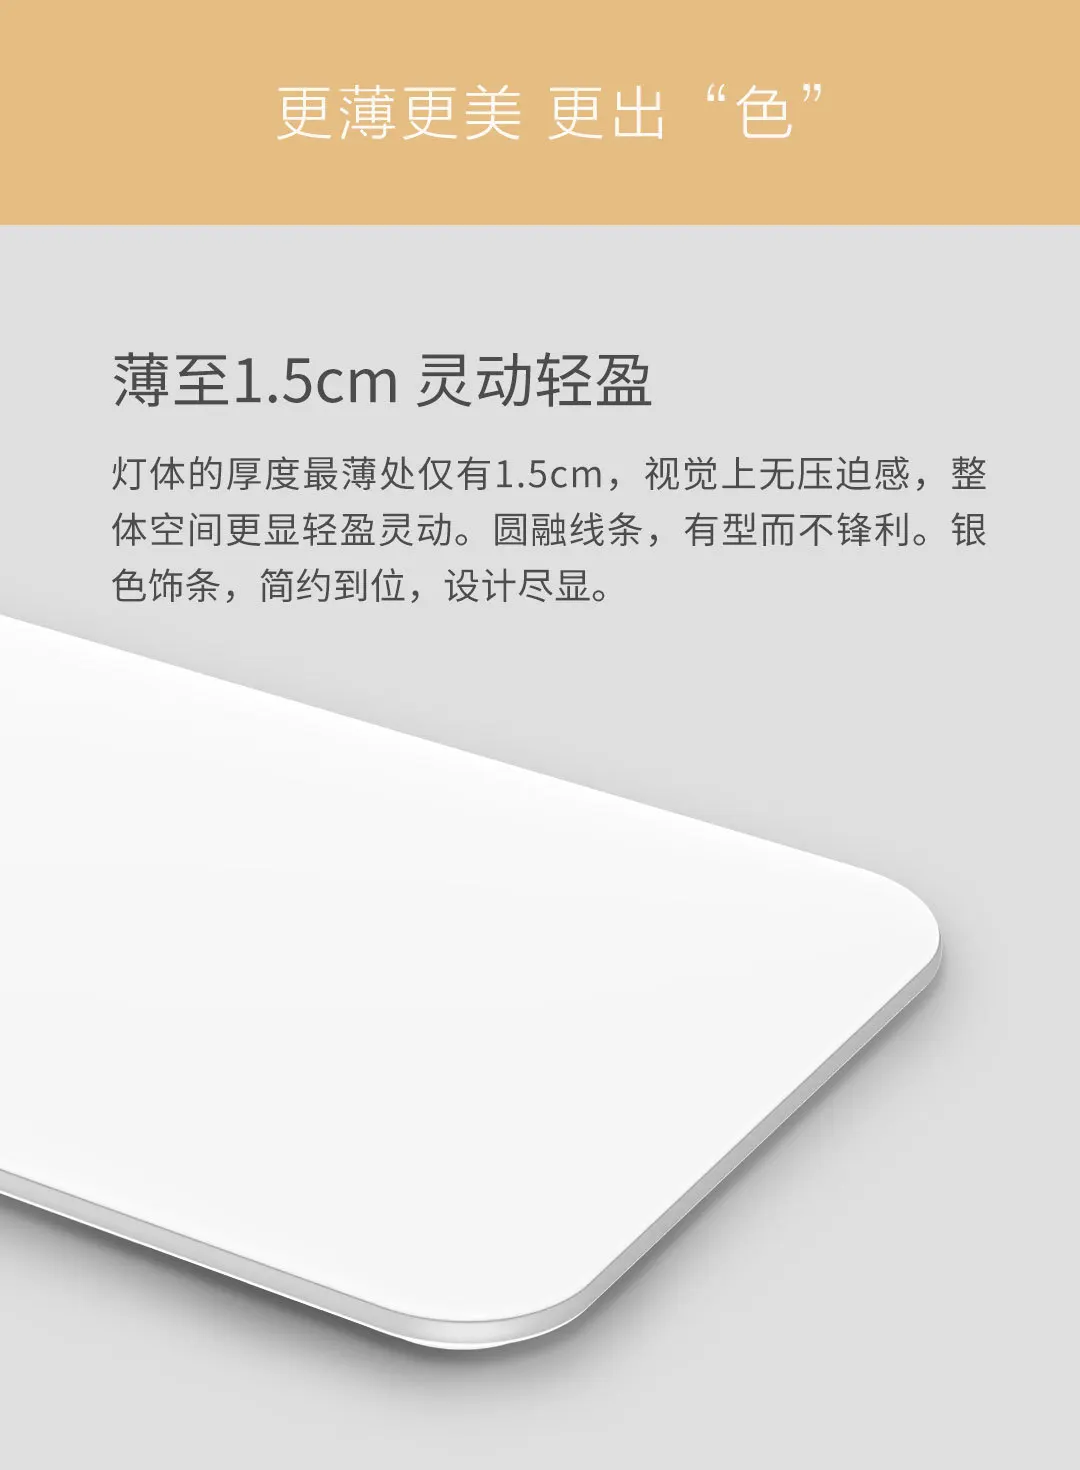 Обновленный двухсторонний Xiaomi Yeelight Light набор оптического волокна тонкий дизайн Mijia Smart APP XIOMI Mihome умный контроль для дома